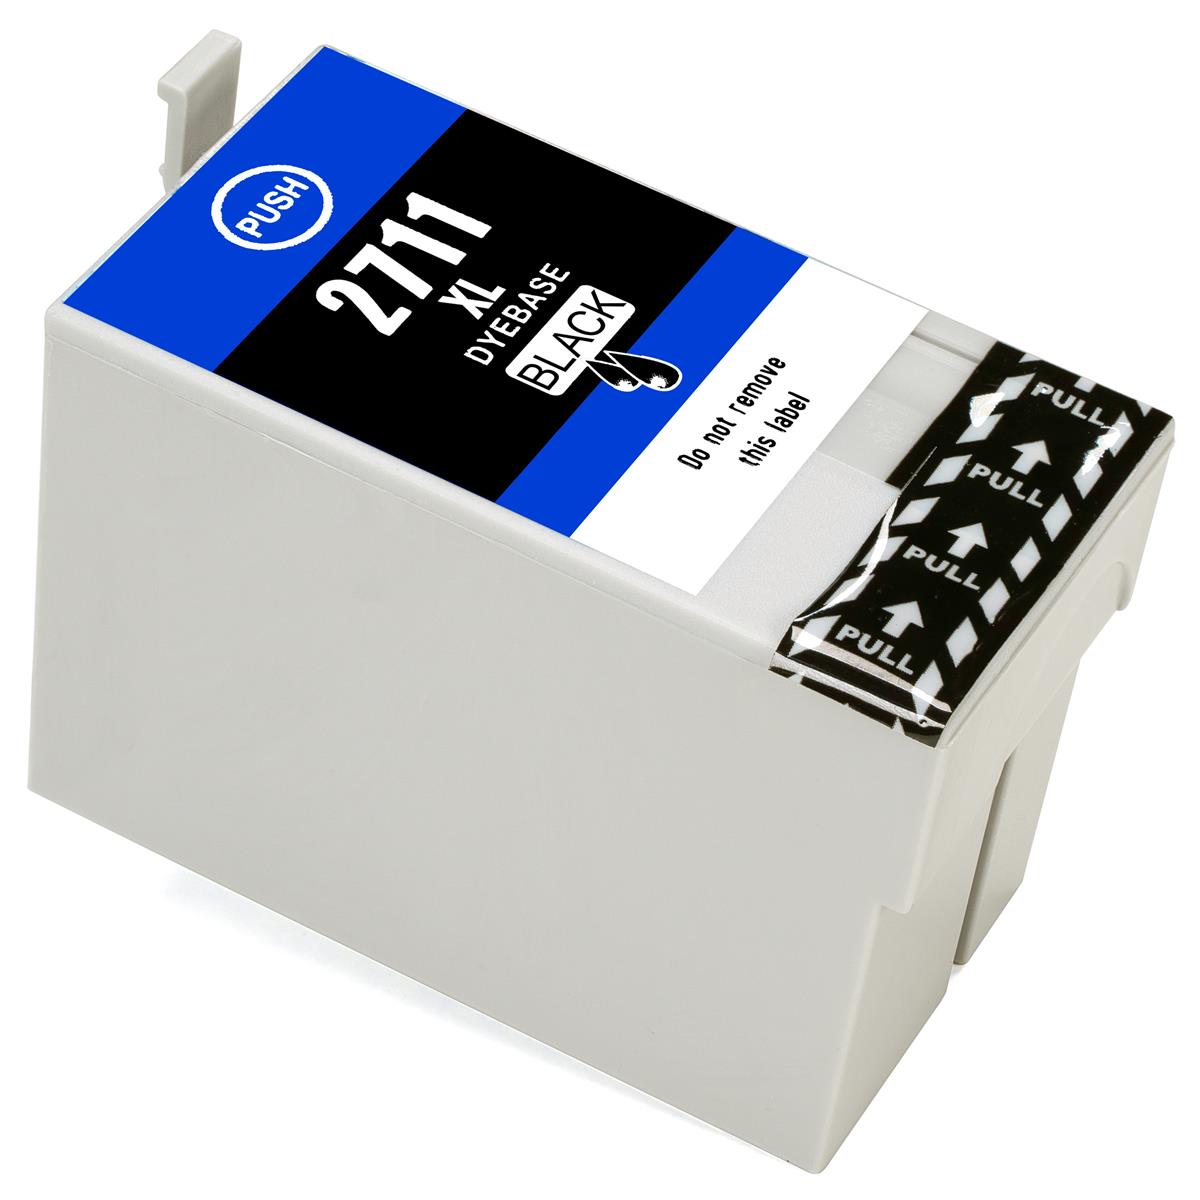 ESMOnline kompatible Druckerpatrone ersetzt Epson 27 XL Black (\